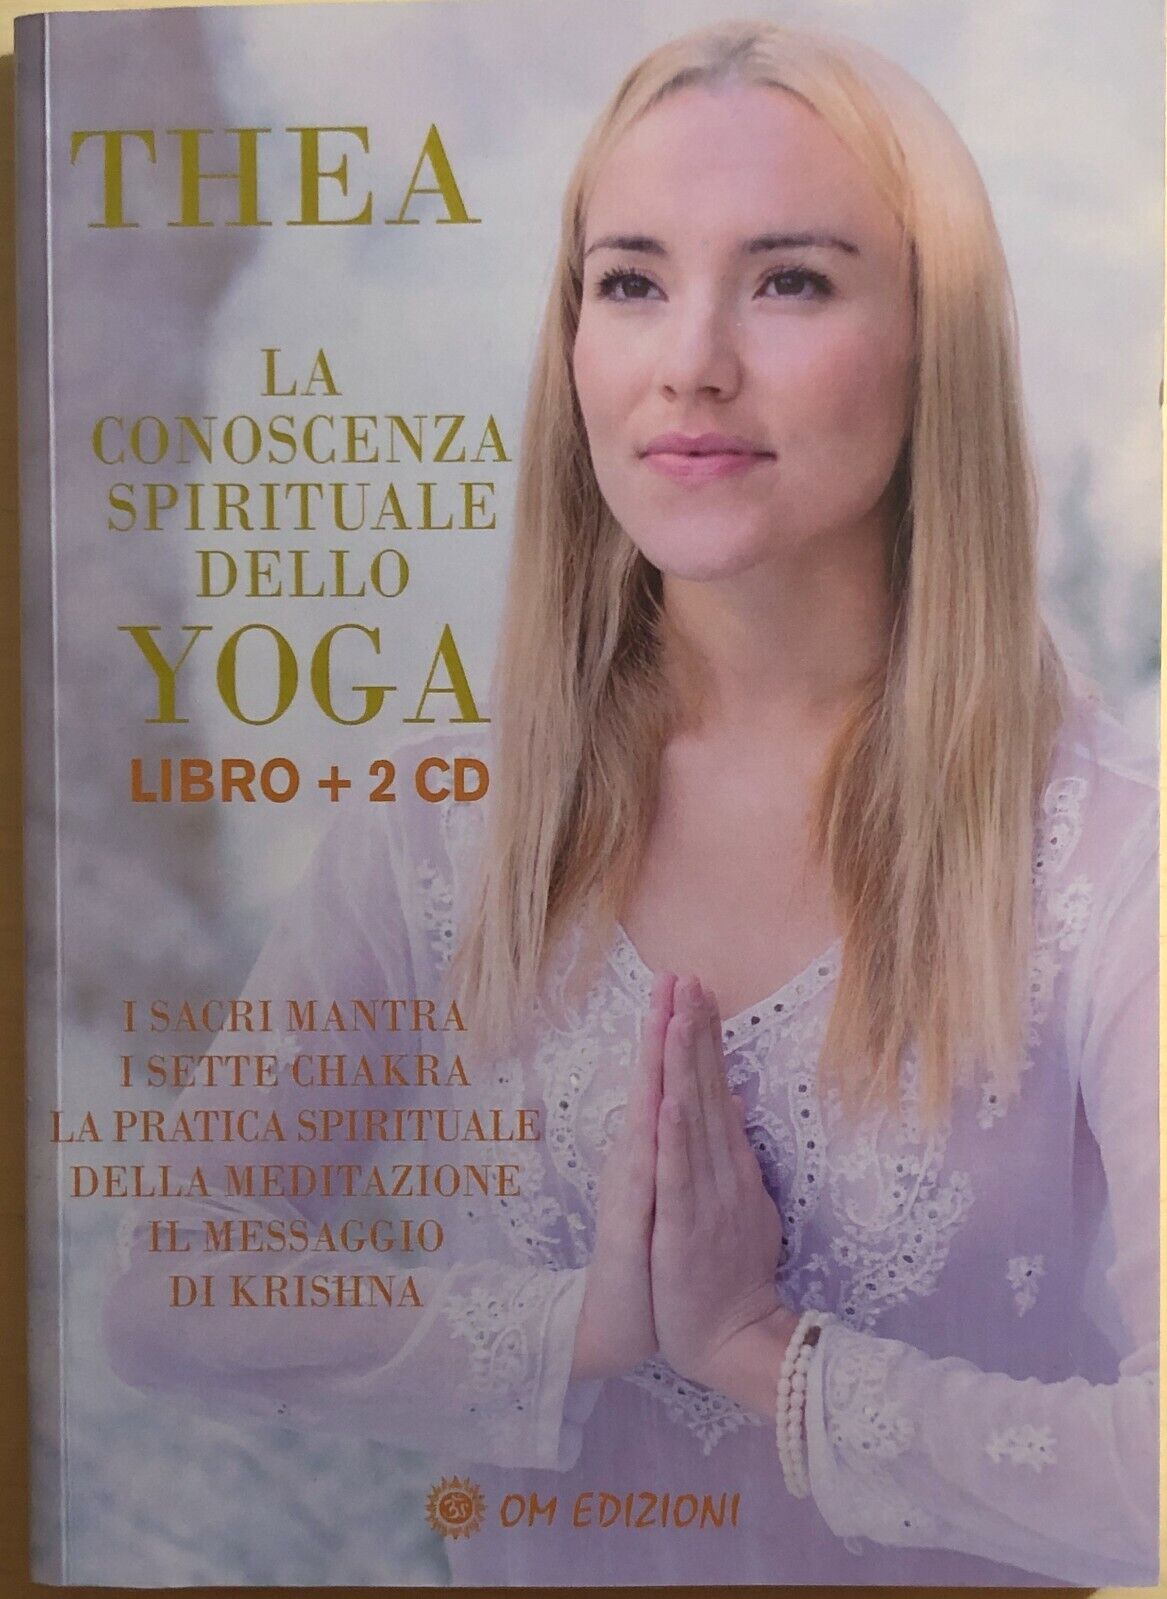 Yoga, la conoscenza spirituale dello Yoga+2 CD di AA.VV., 2020, OM Edizioni